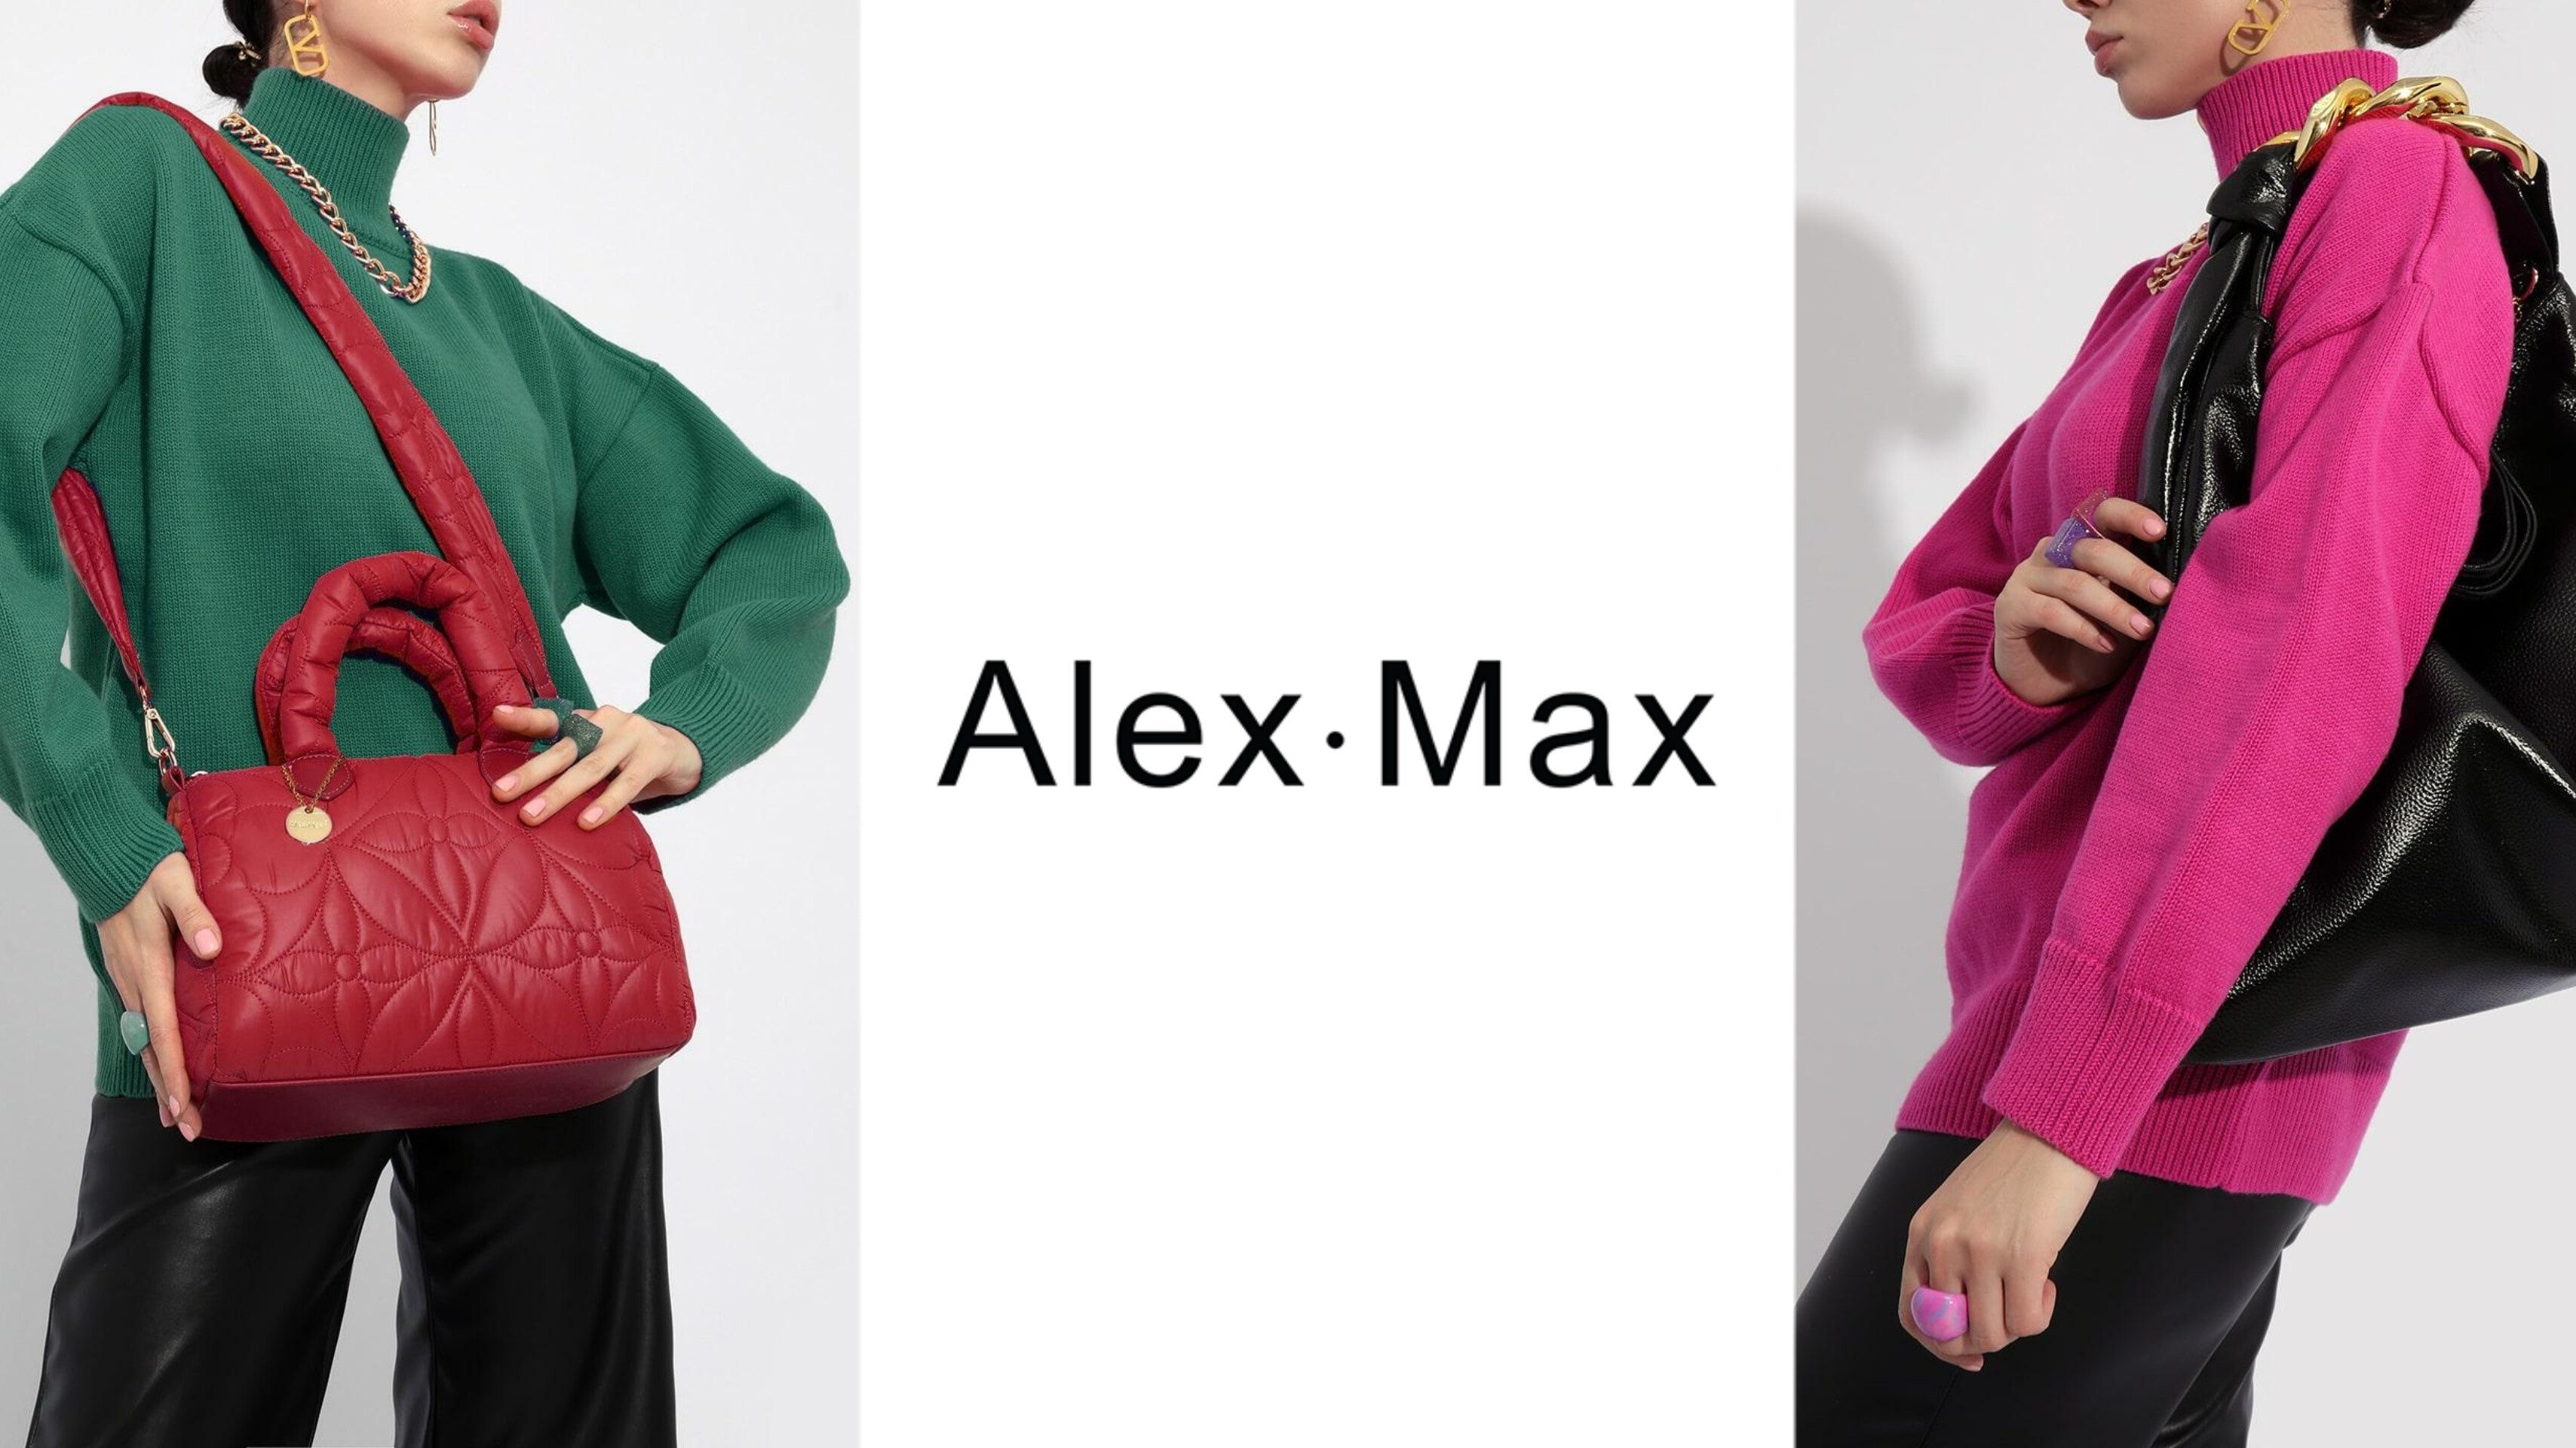 Яркие и эффектные современные модели Alex Max из Италии